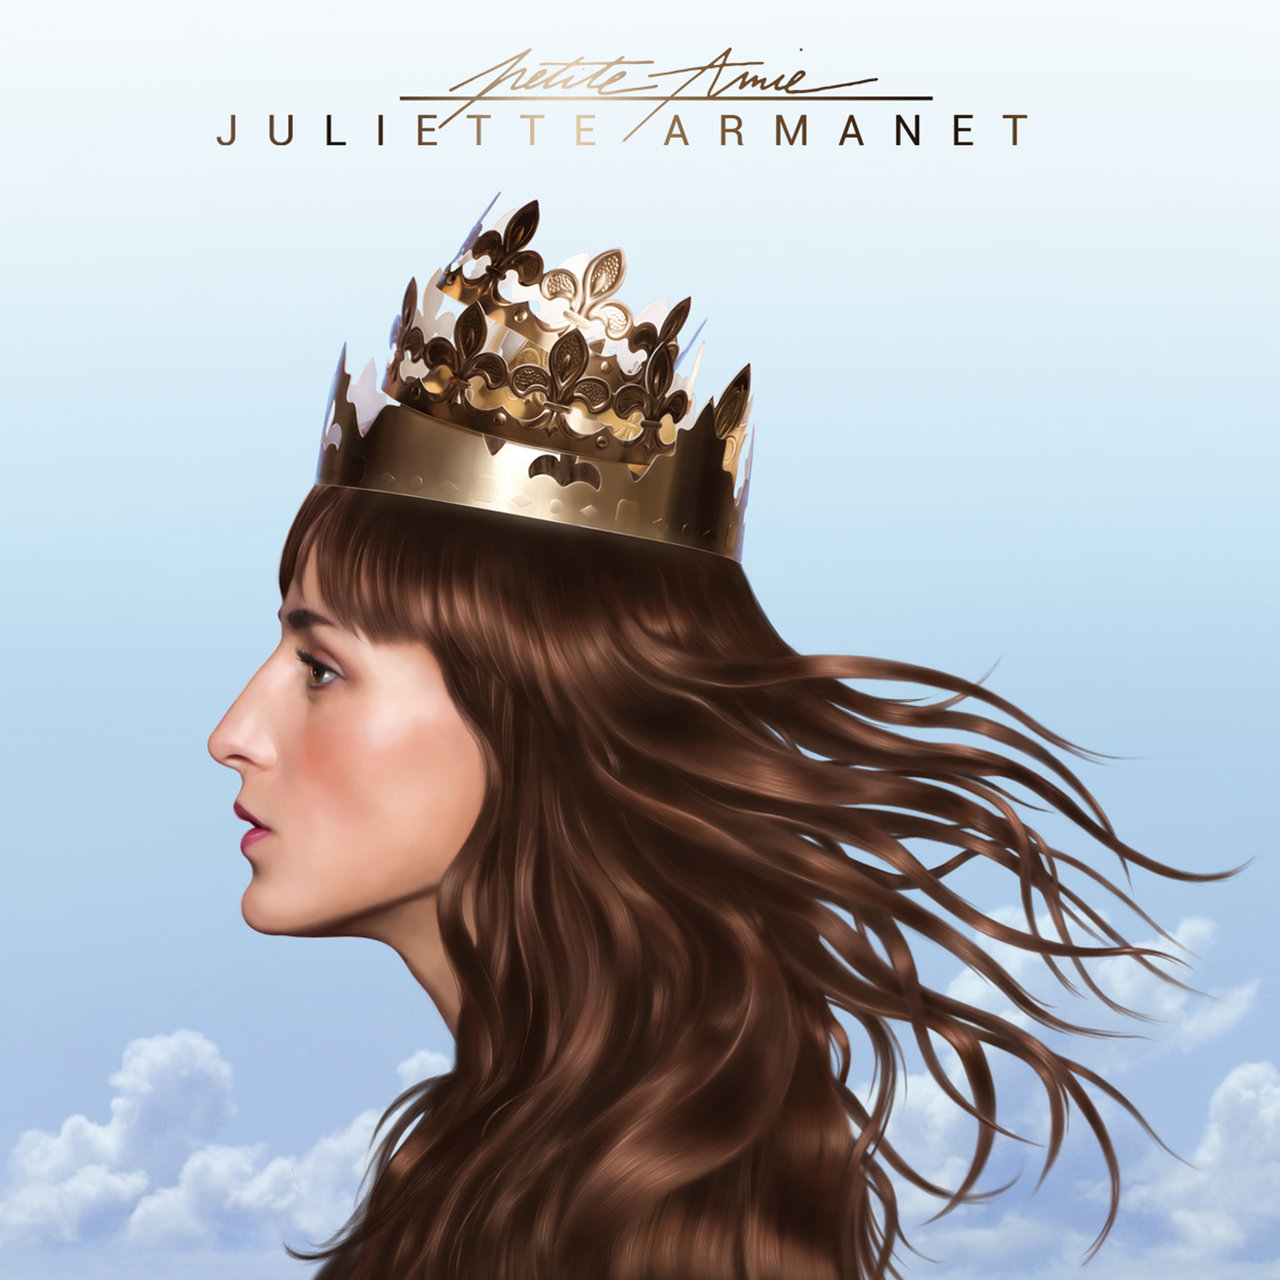 Juliette Armanet Petite Amie cover artwork